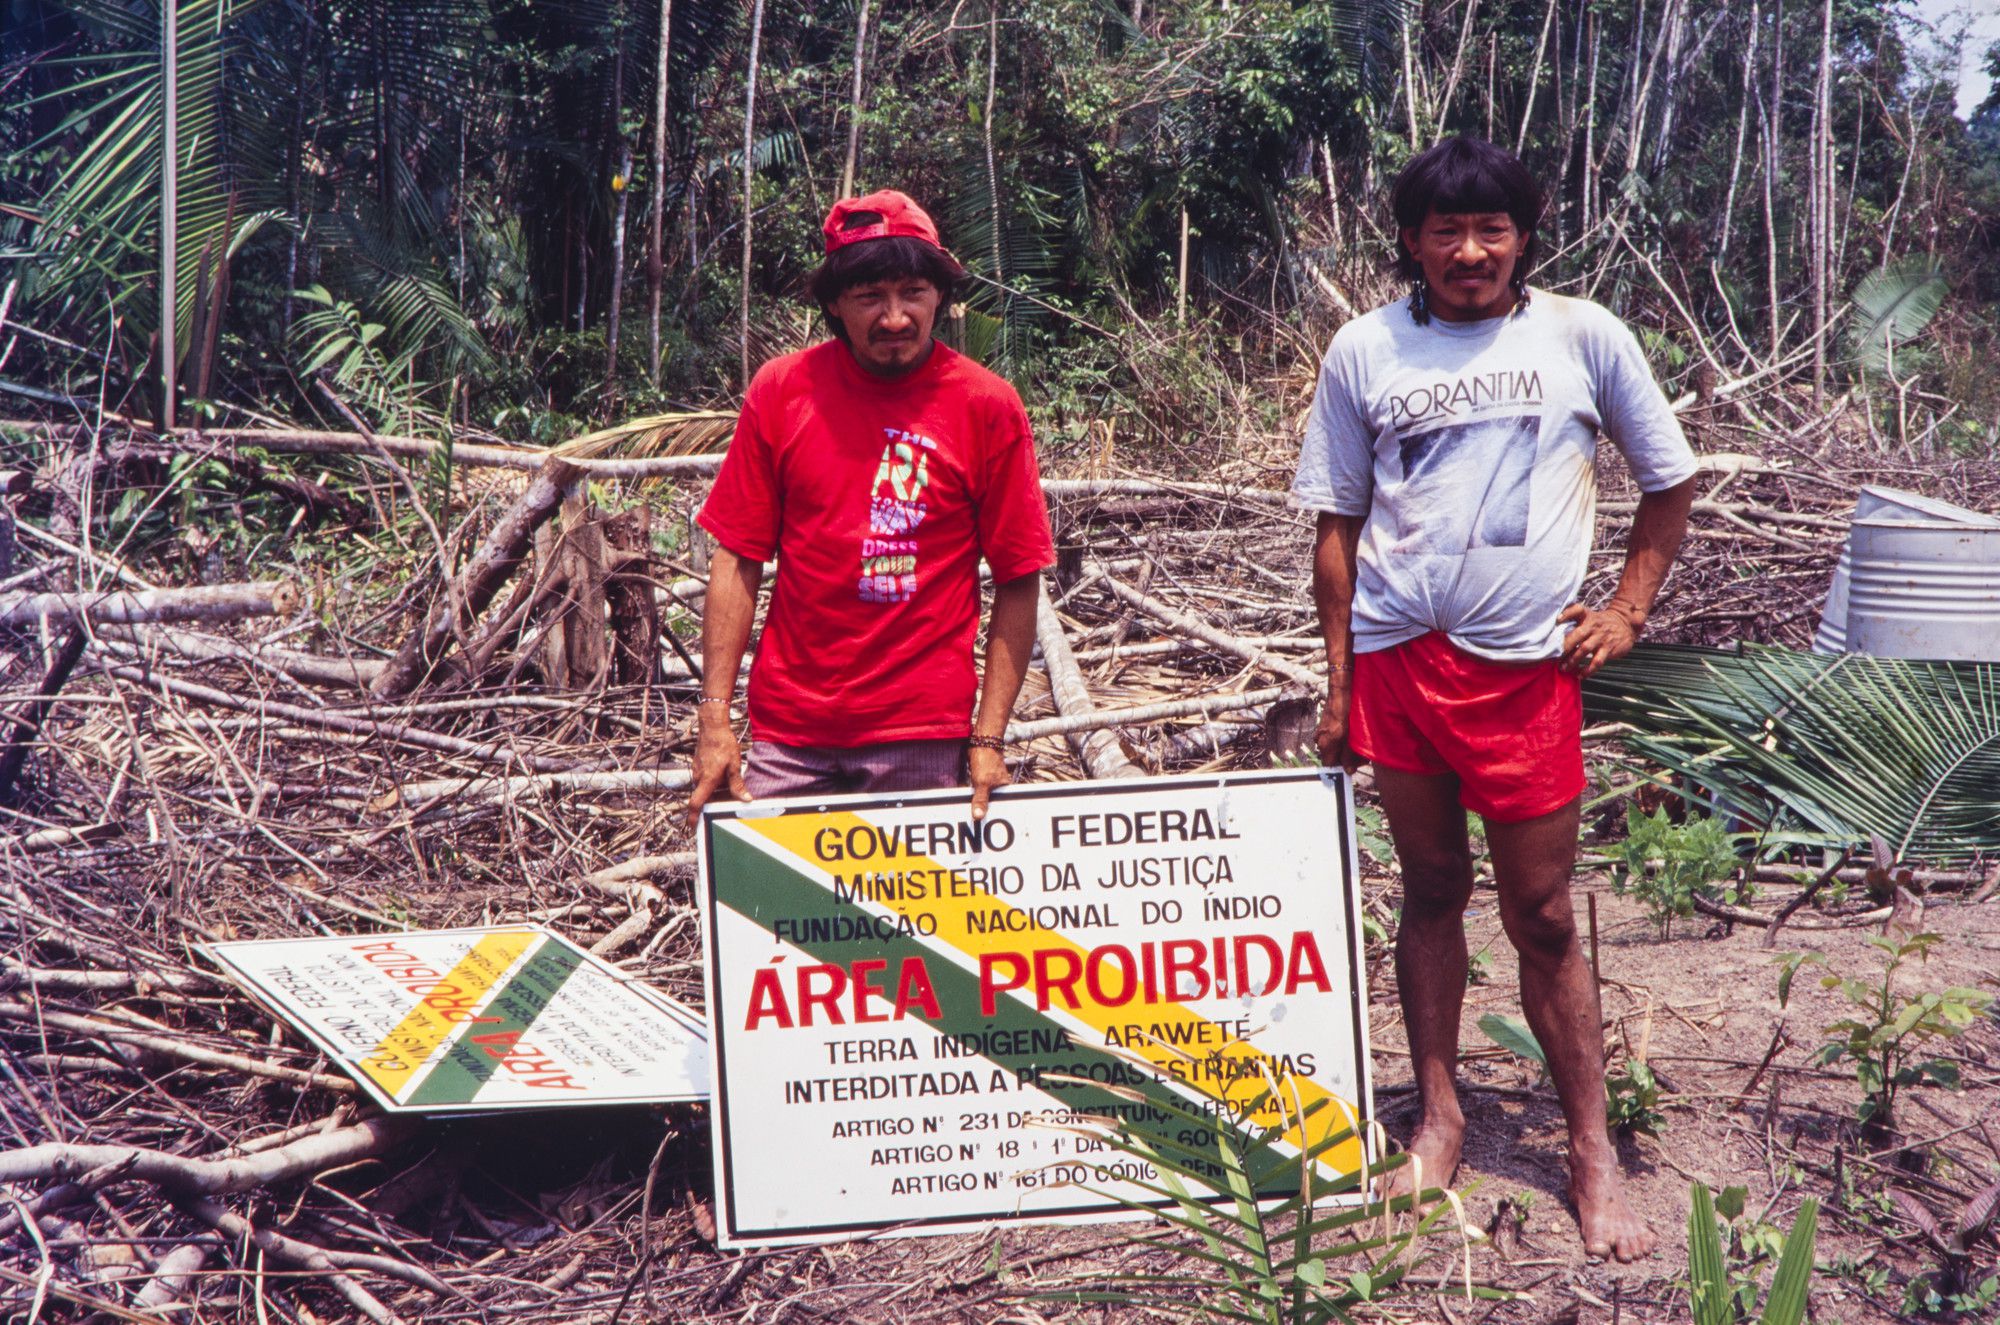 Homens da tribo Araweté junto à placa de demarcação da Terra Indígena Araweté, no Pará